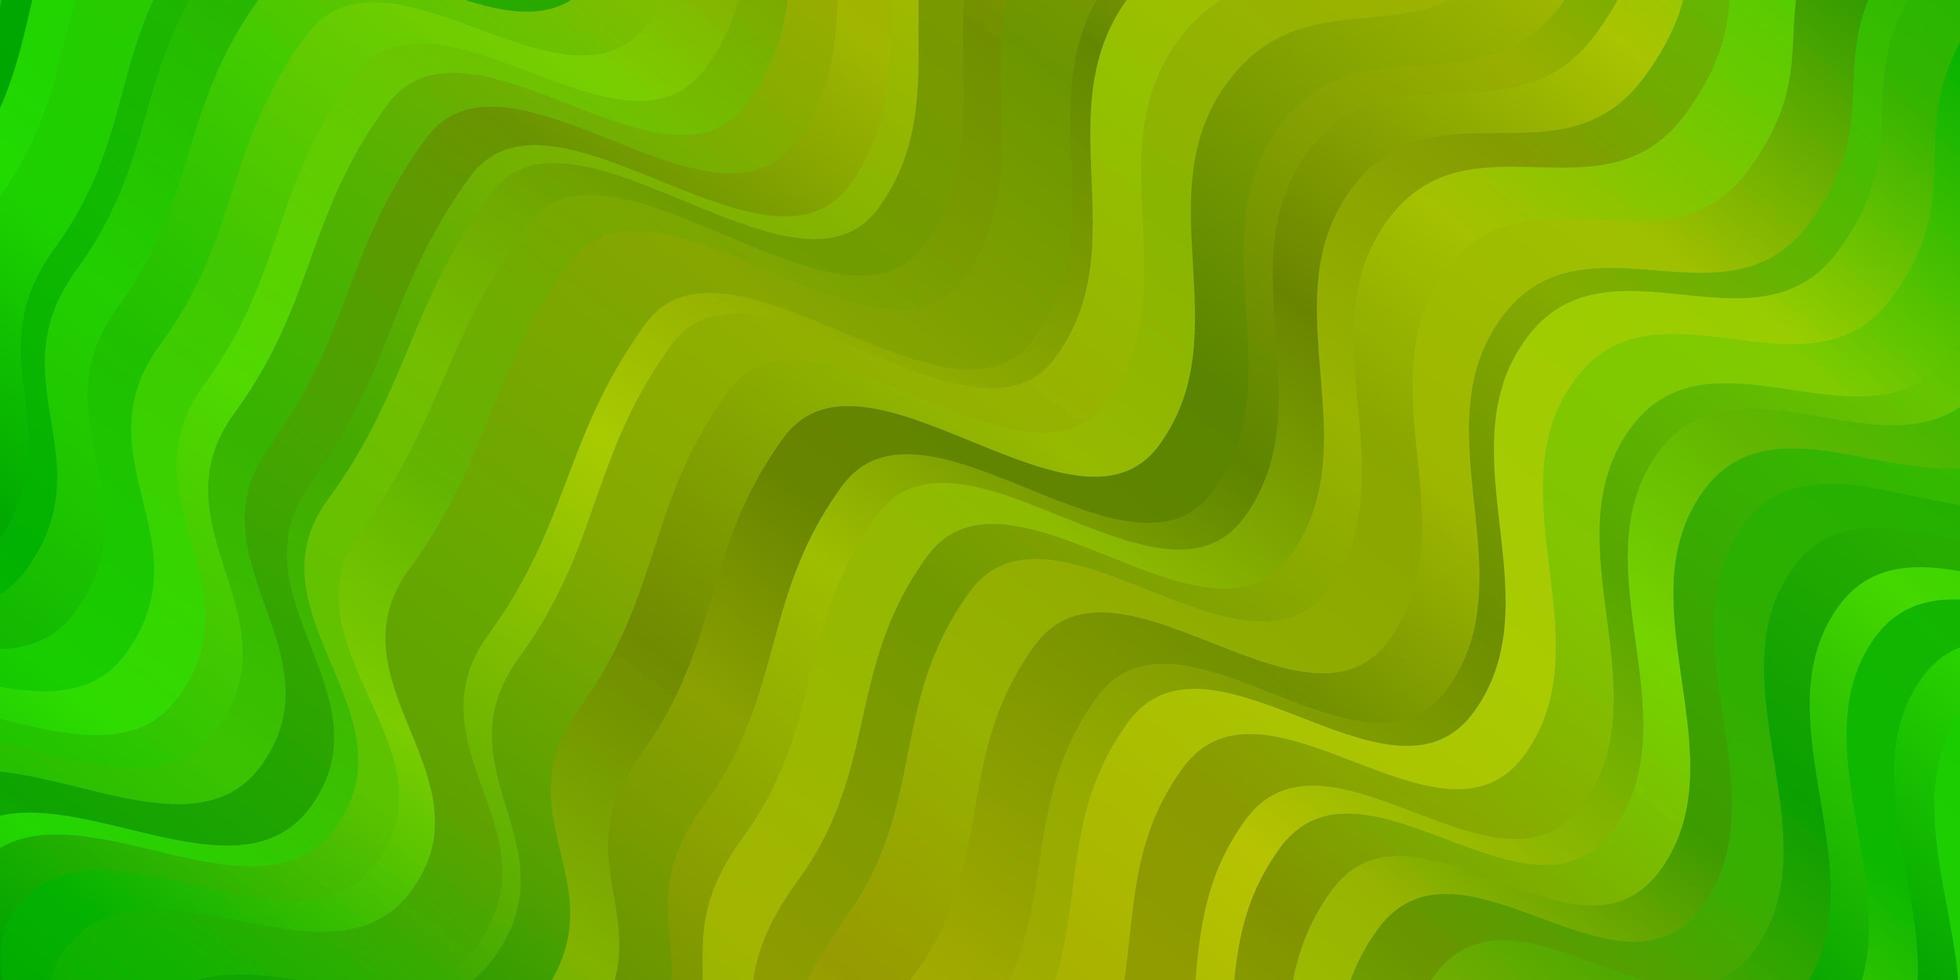 toile de fond de vecteur jaune vert clair avec illustration d'arc circulaire dans un style abstrait avec modèle incurvé dégradé pour téléphones portables